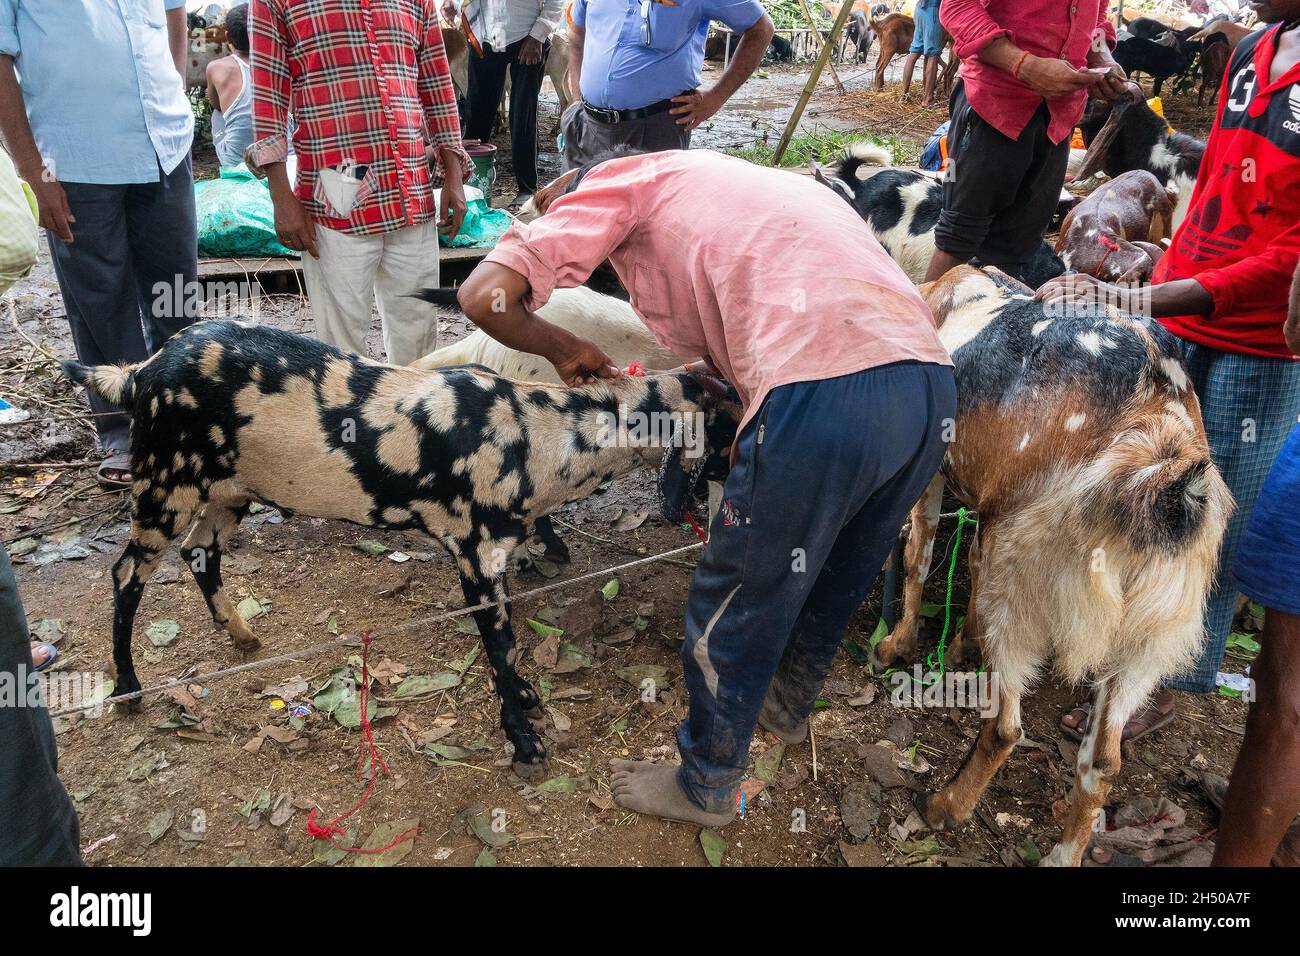 Kolkata,Bengale occidental, Inde - 11th août 2019: Le vendeur et l'acheteur négocient le prix des chèvres pendant 'Eid al-Adha' ou 'Fête du sacrifice'. Banque D'Images